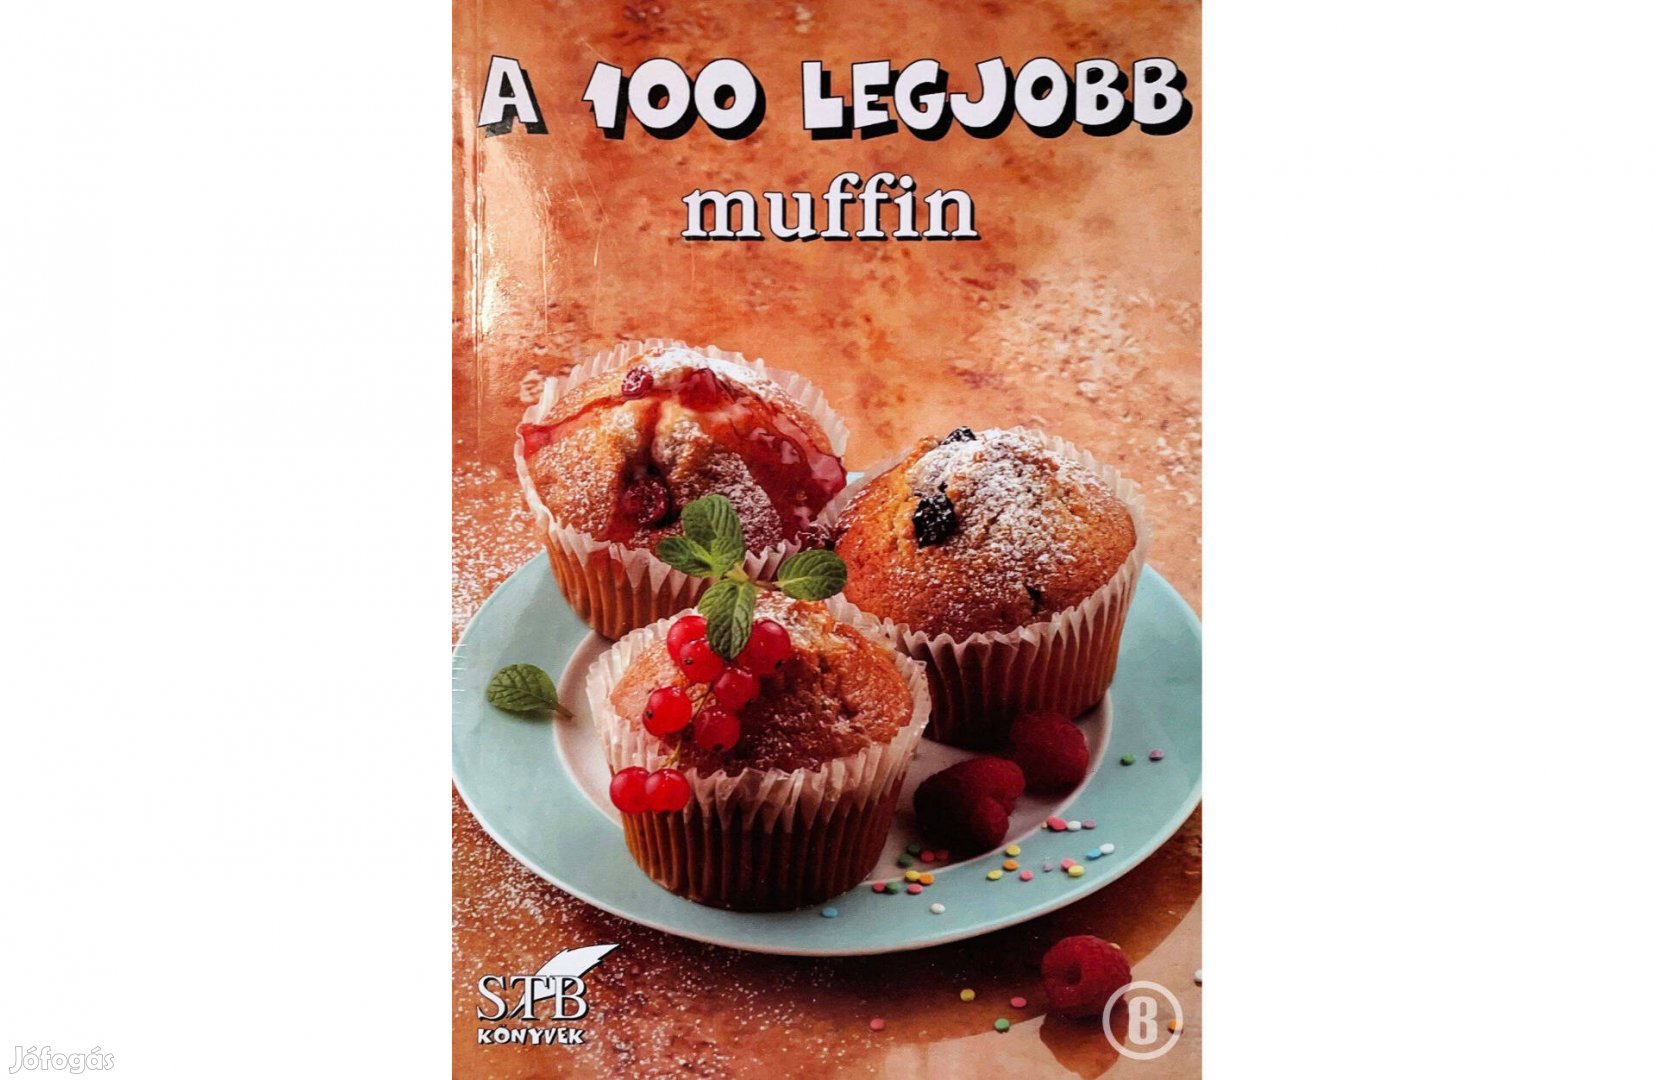 A 100 legjobb muffin (85. kötet / szerk. Toró Elza)